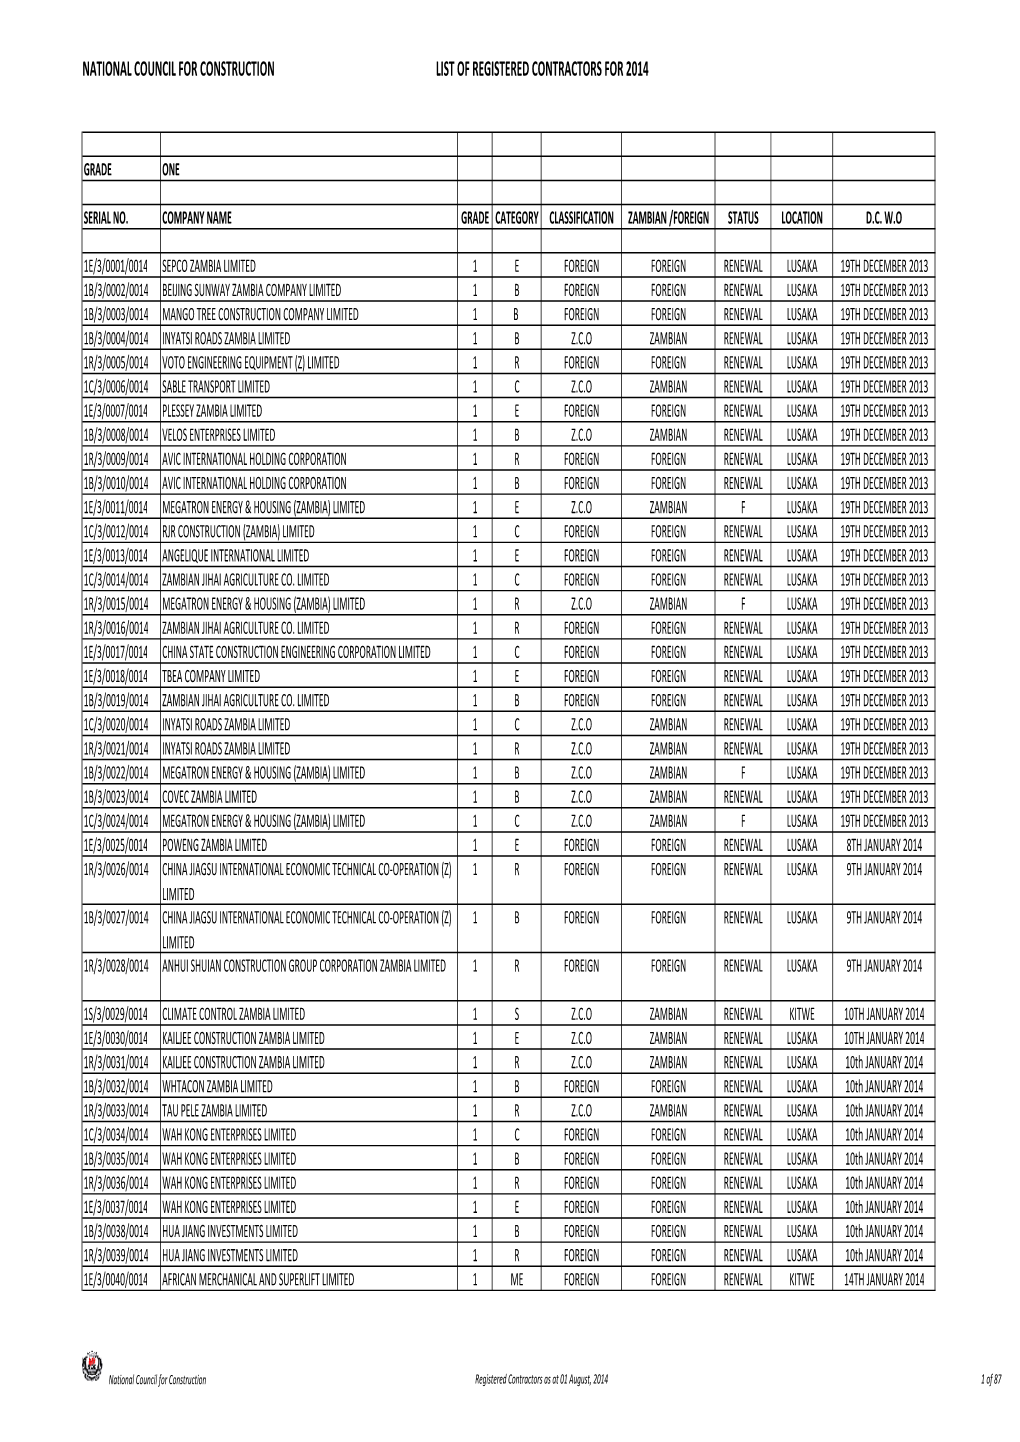 2014 List of Registered Contractors